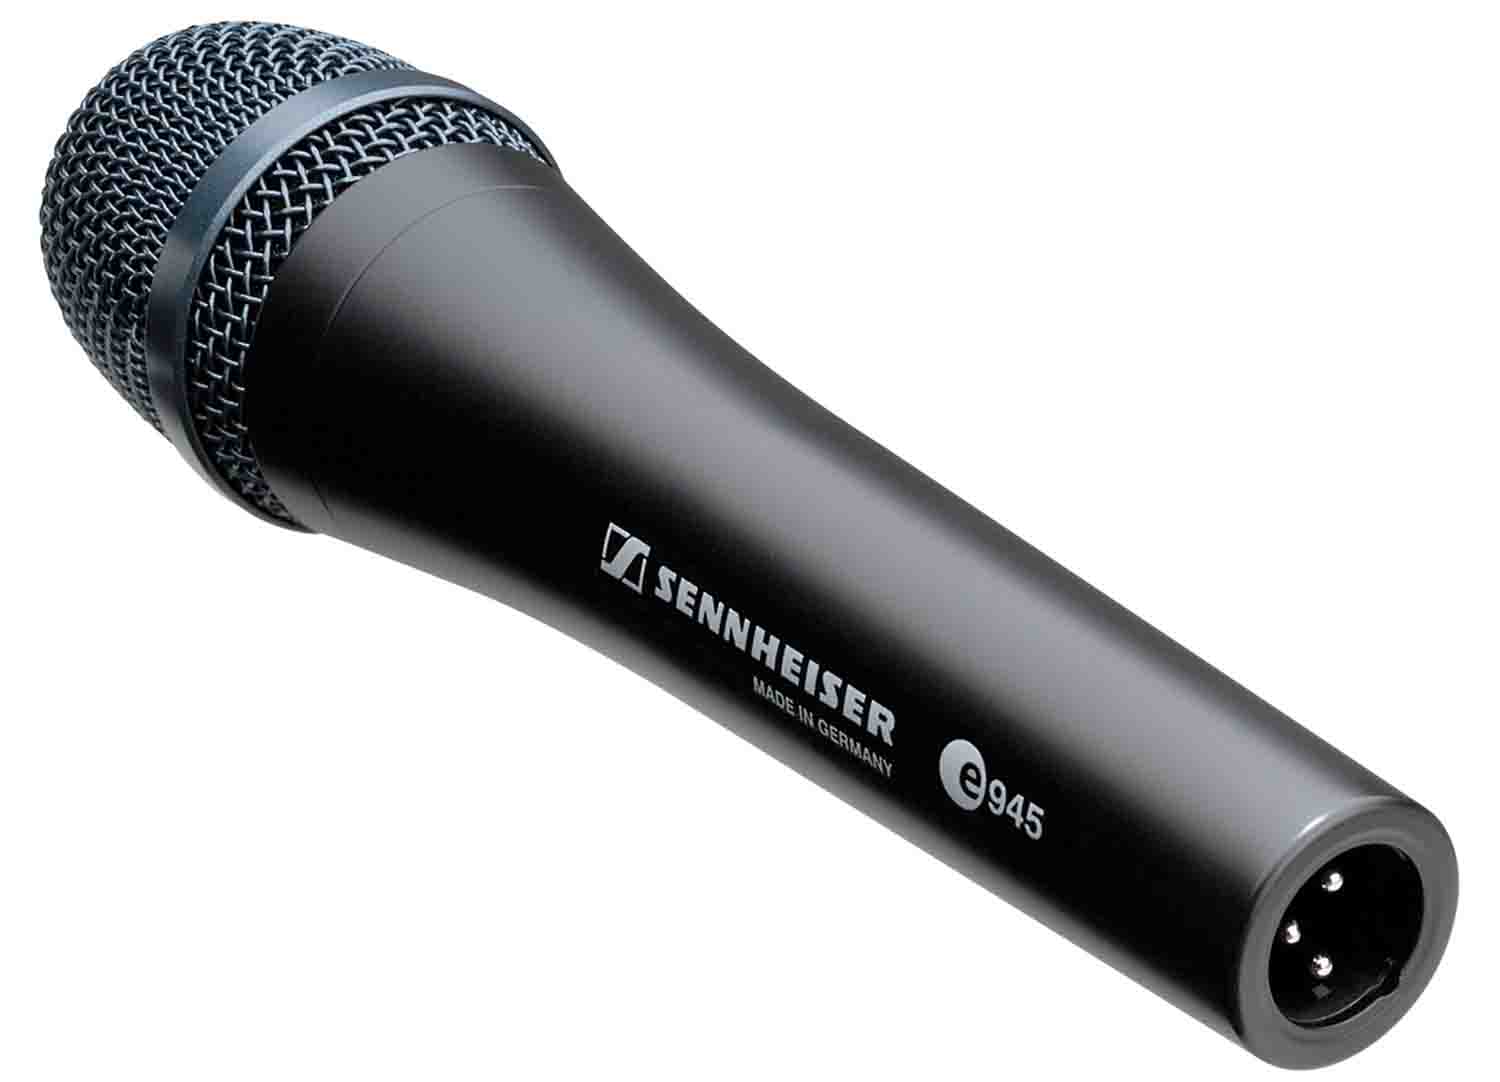 Sennheiser E 945 Supercardioid Dynamic Vocal Microphone - Hollywood DJ